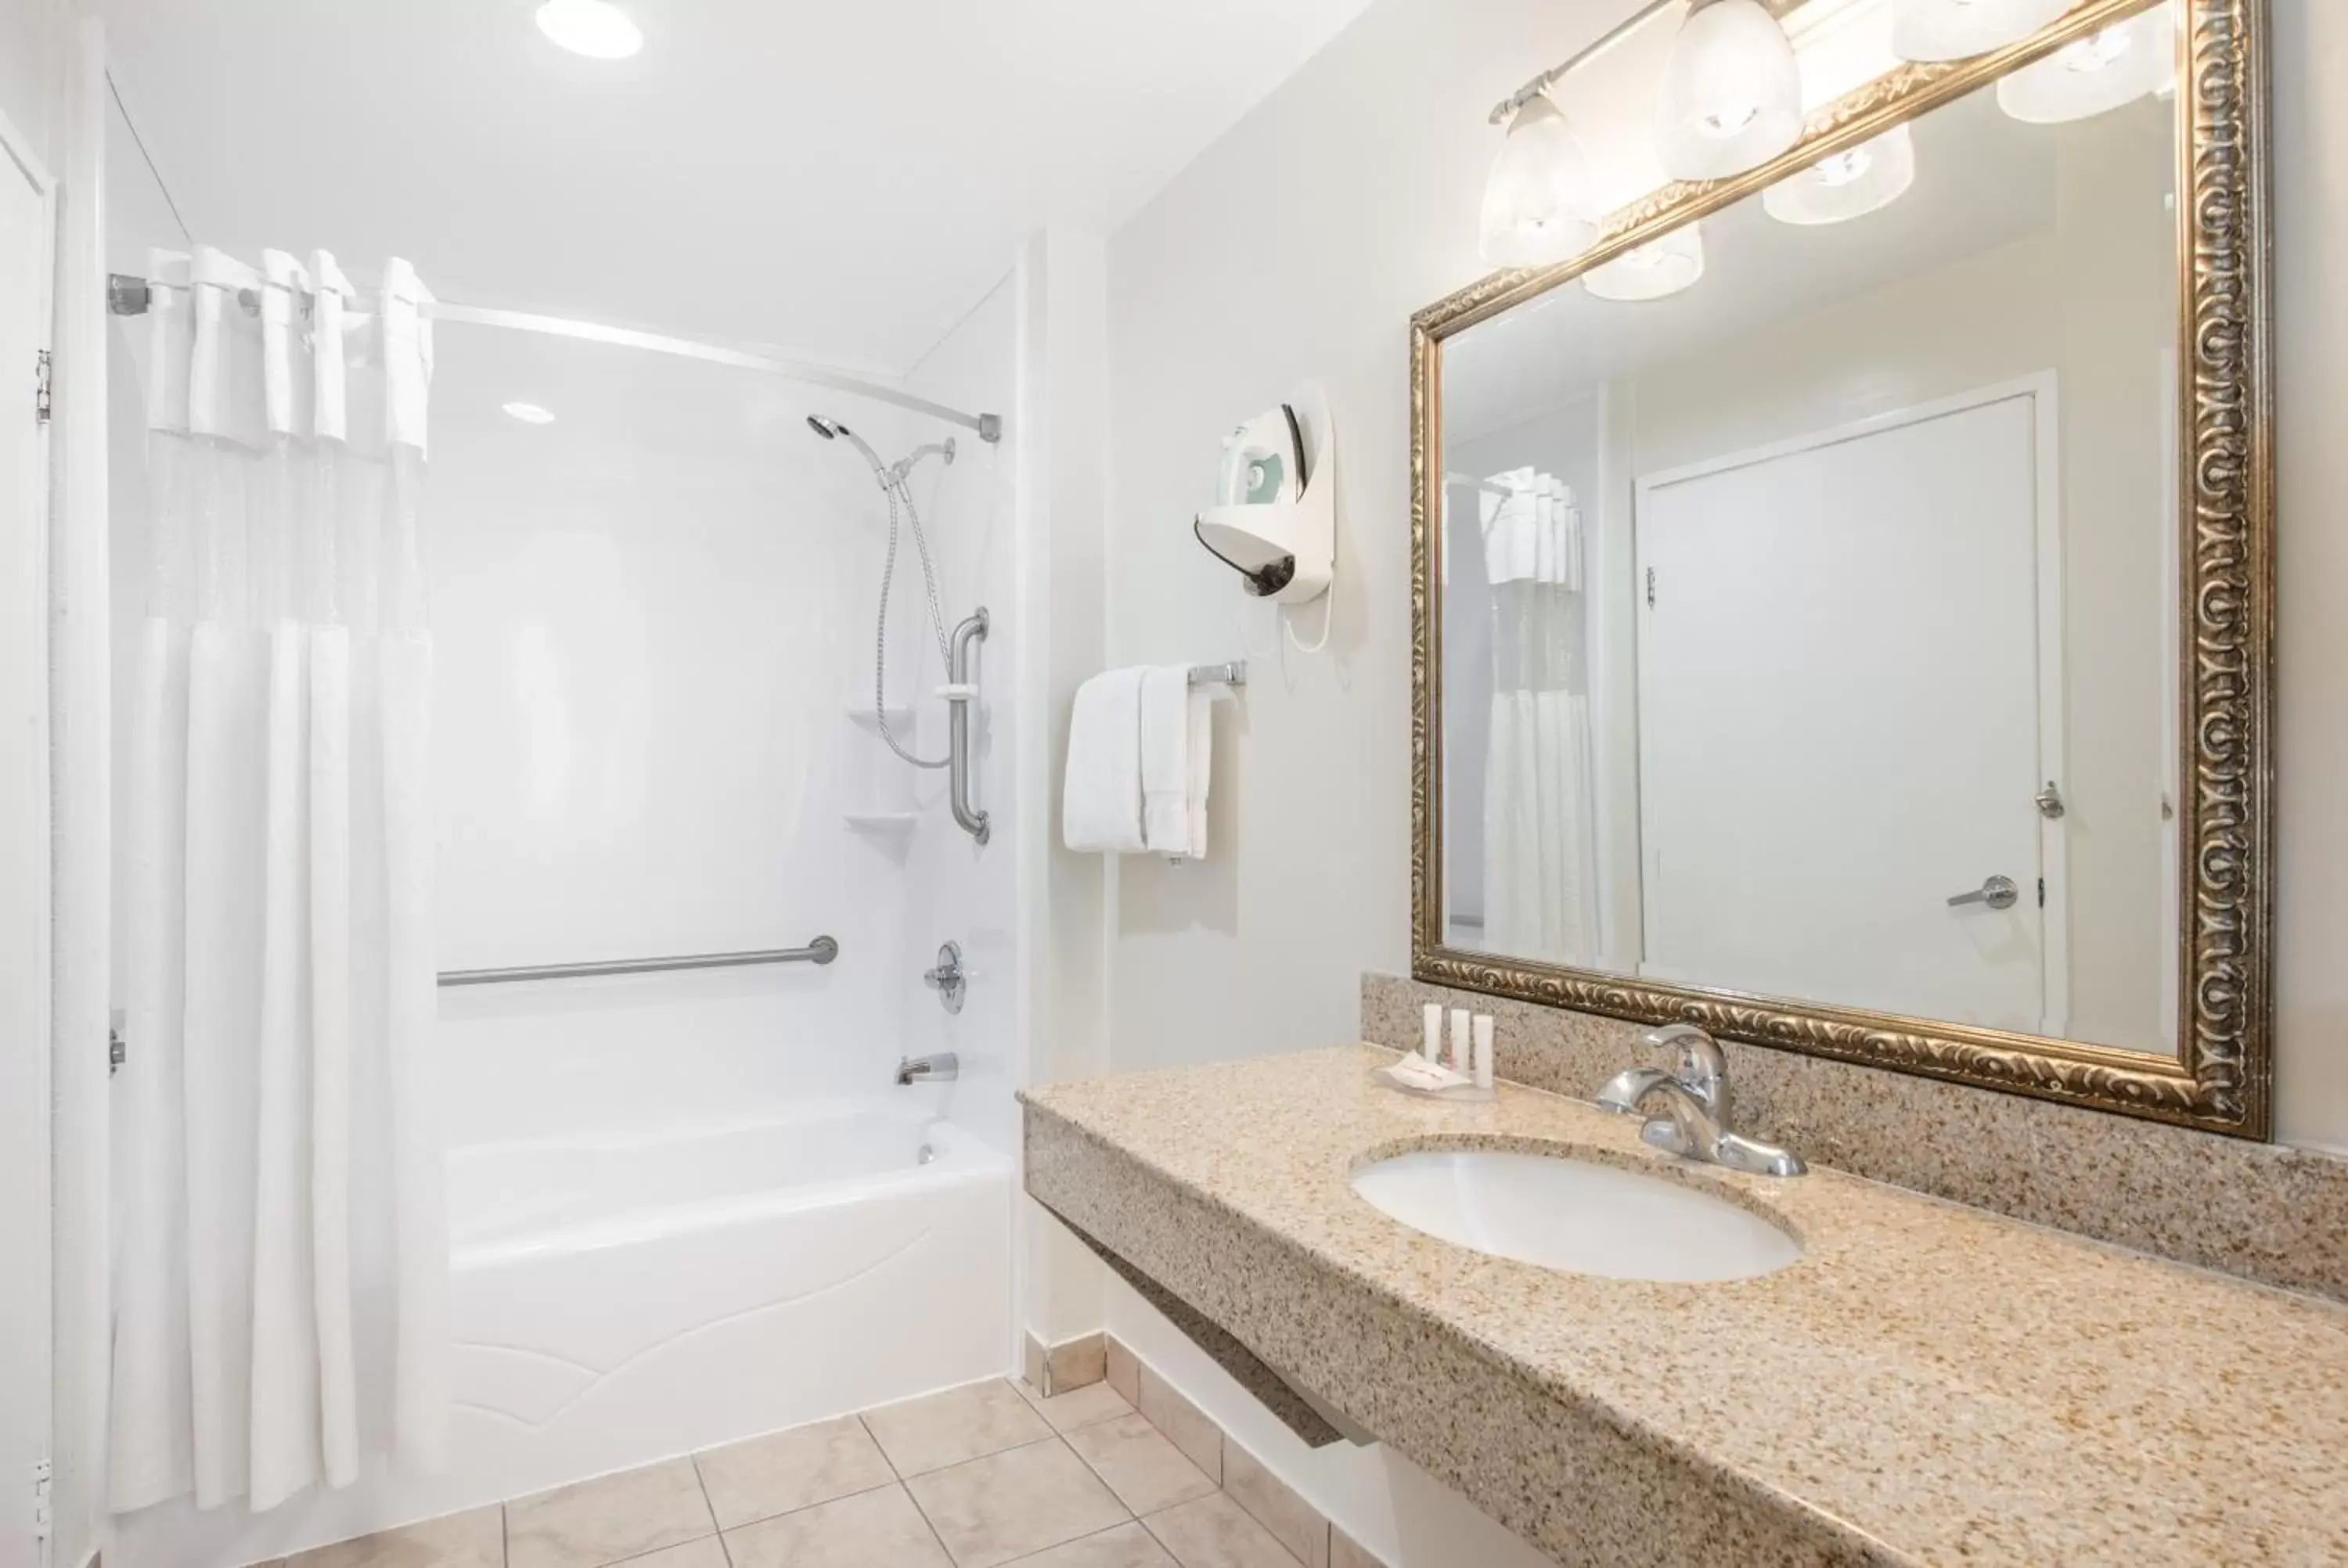 Shower, Bathroom in Ramada by Wyndham San Diego Airport